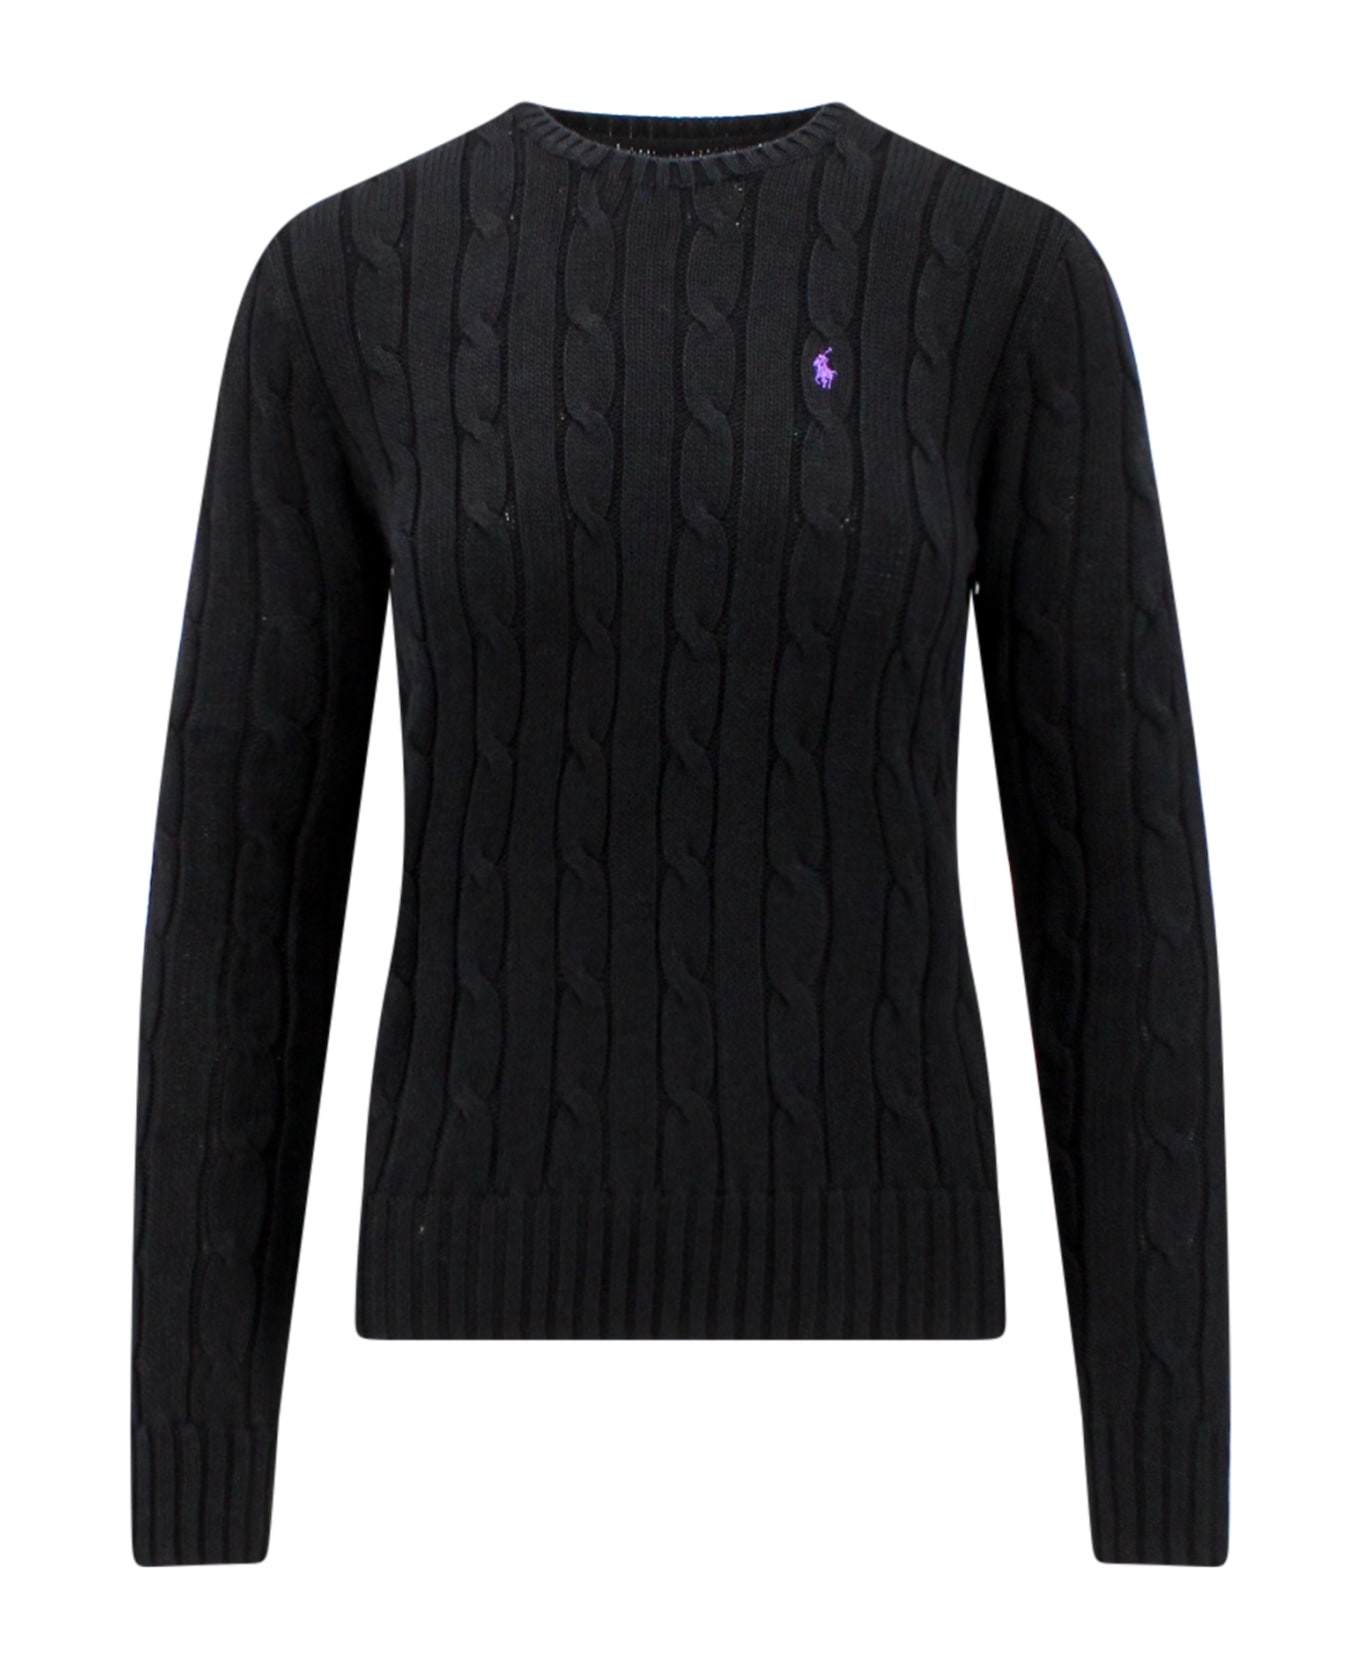 Ralph Lauren Sweater - BLACK